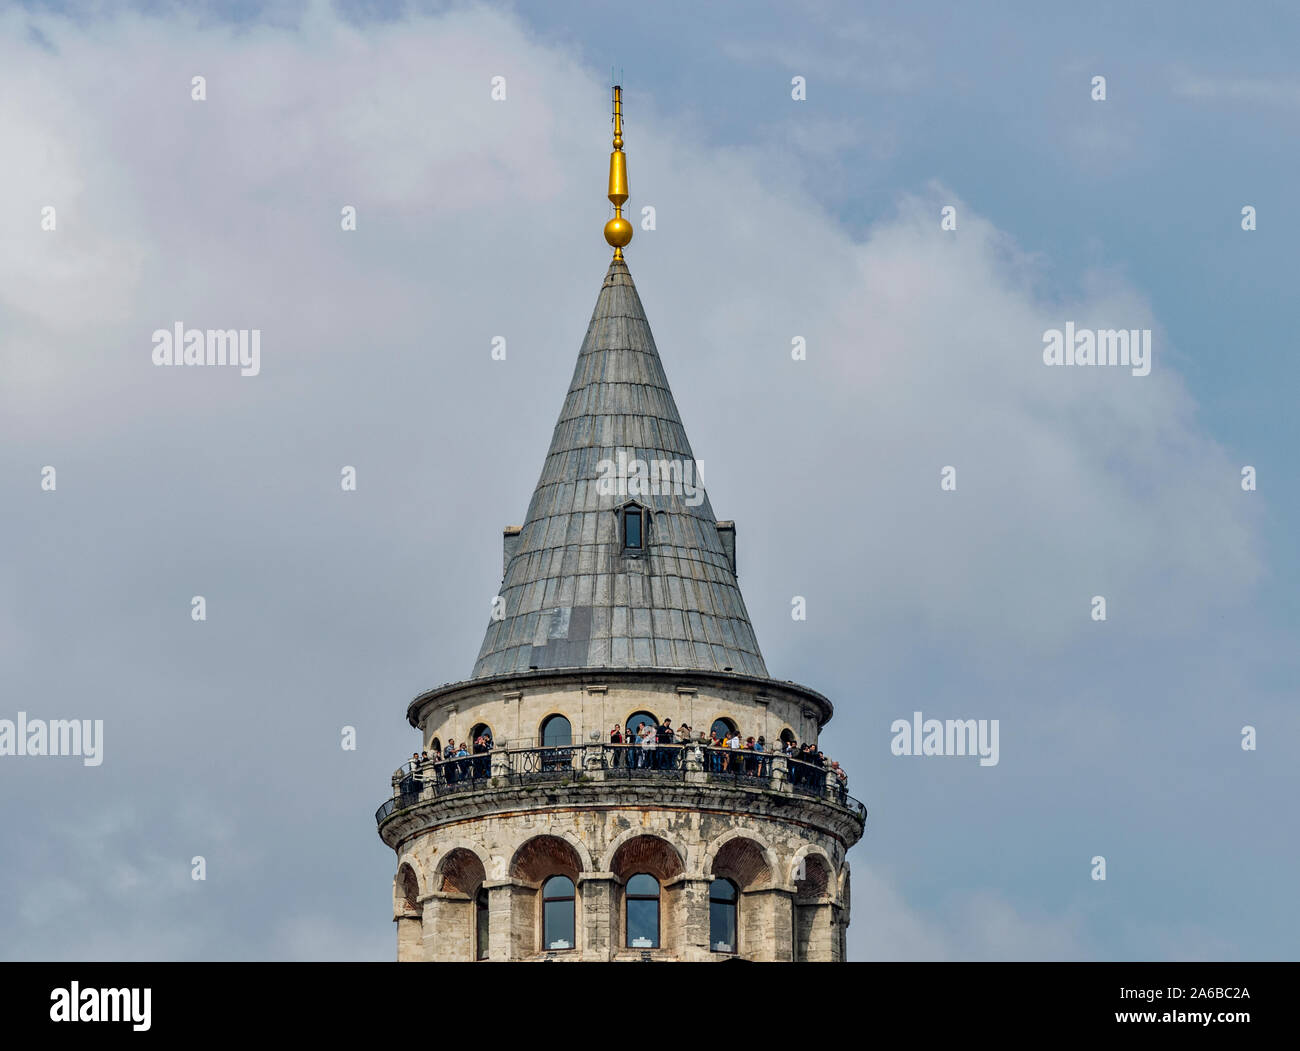 ISTANBUL TÜRKEI DER Galata Turm im Stadtteil Karakoy MENSCHEN AUF DER AUSSICHTSPLATTFORM AUF DER SPITZE DES turmes Stockfoto